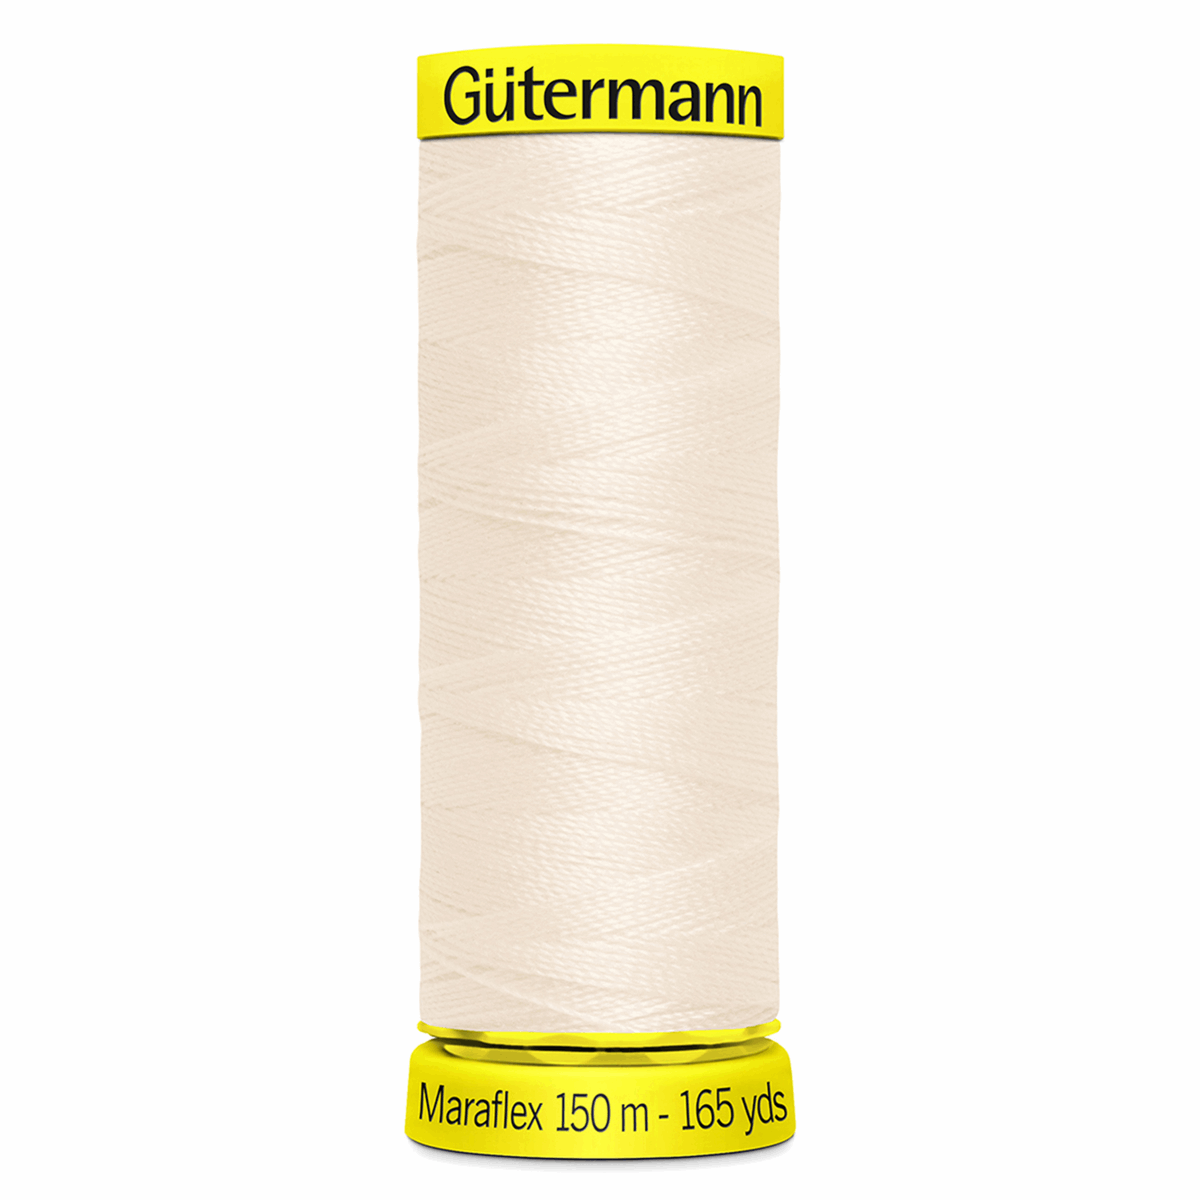 Gutermann Maraflex Elastic Sewing Thread 150m Calico 802